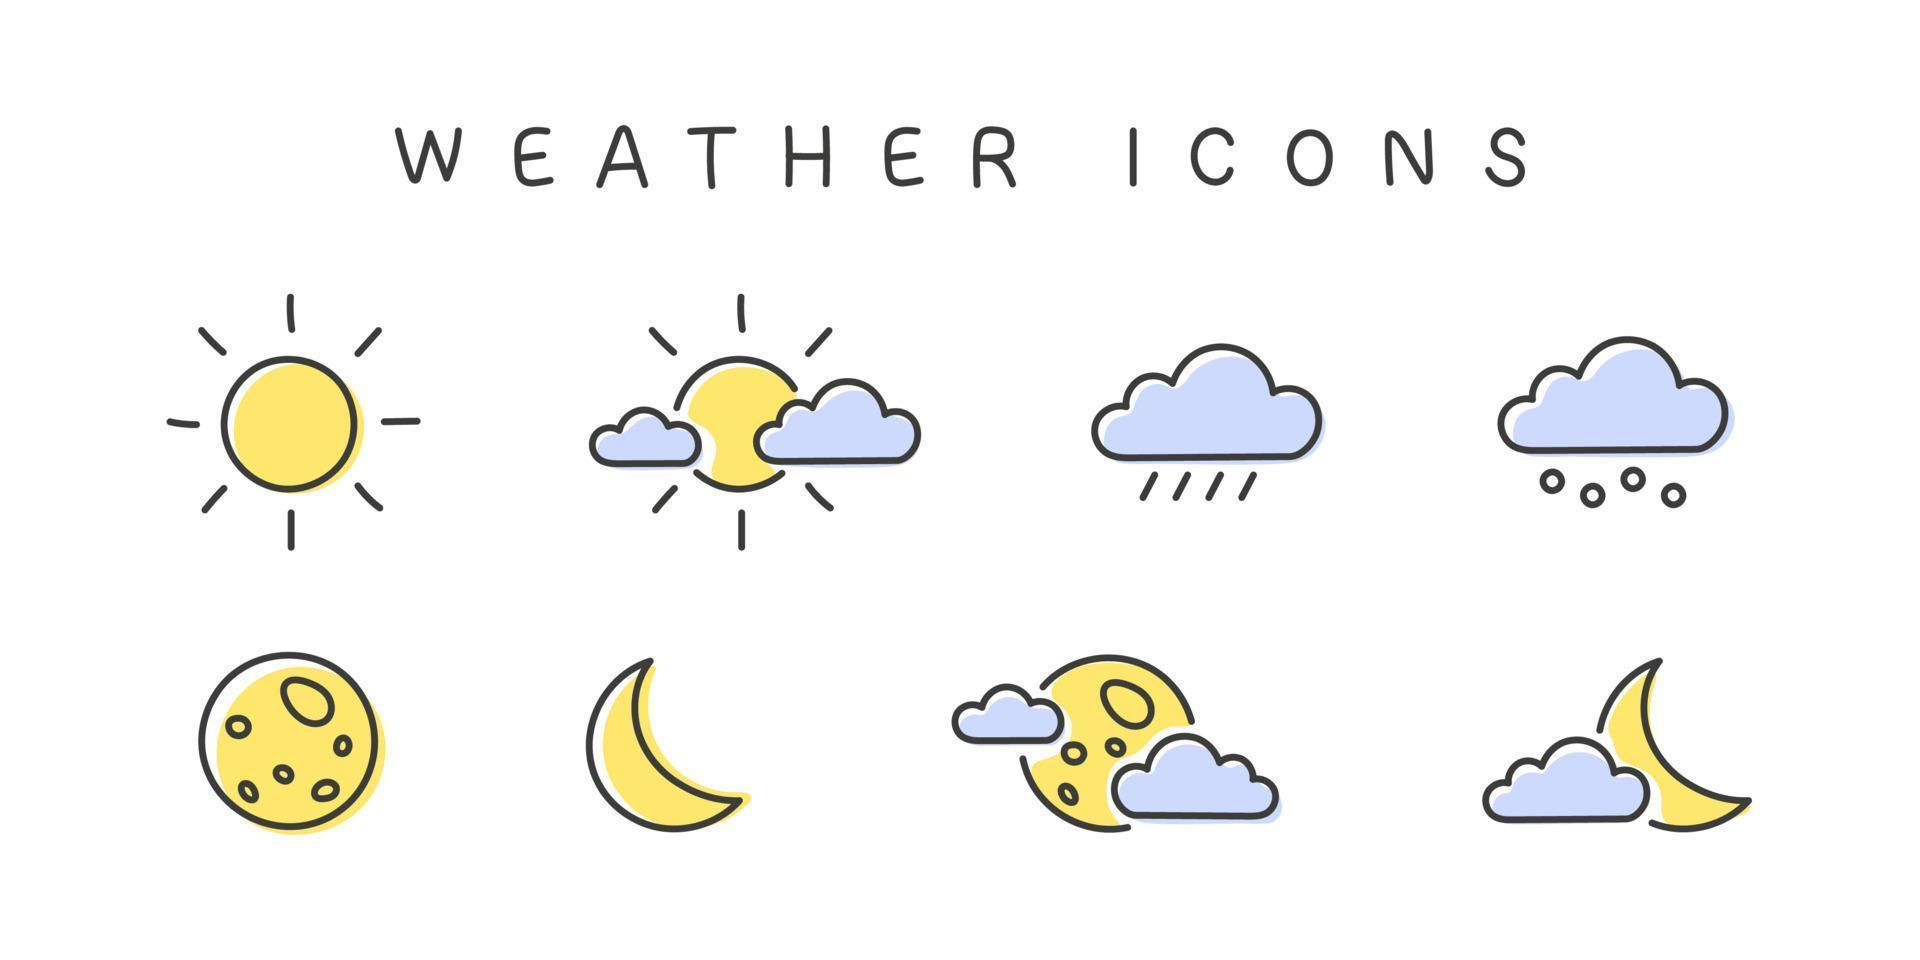 Wettersymbole. Mondsonnenzeichen mit Wolken. Meteorologie-Icons-Elemente. Wetter-Web-Icons im modernen Stil. Vektor-Illustration vektor